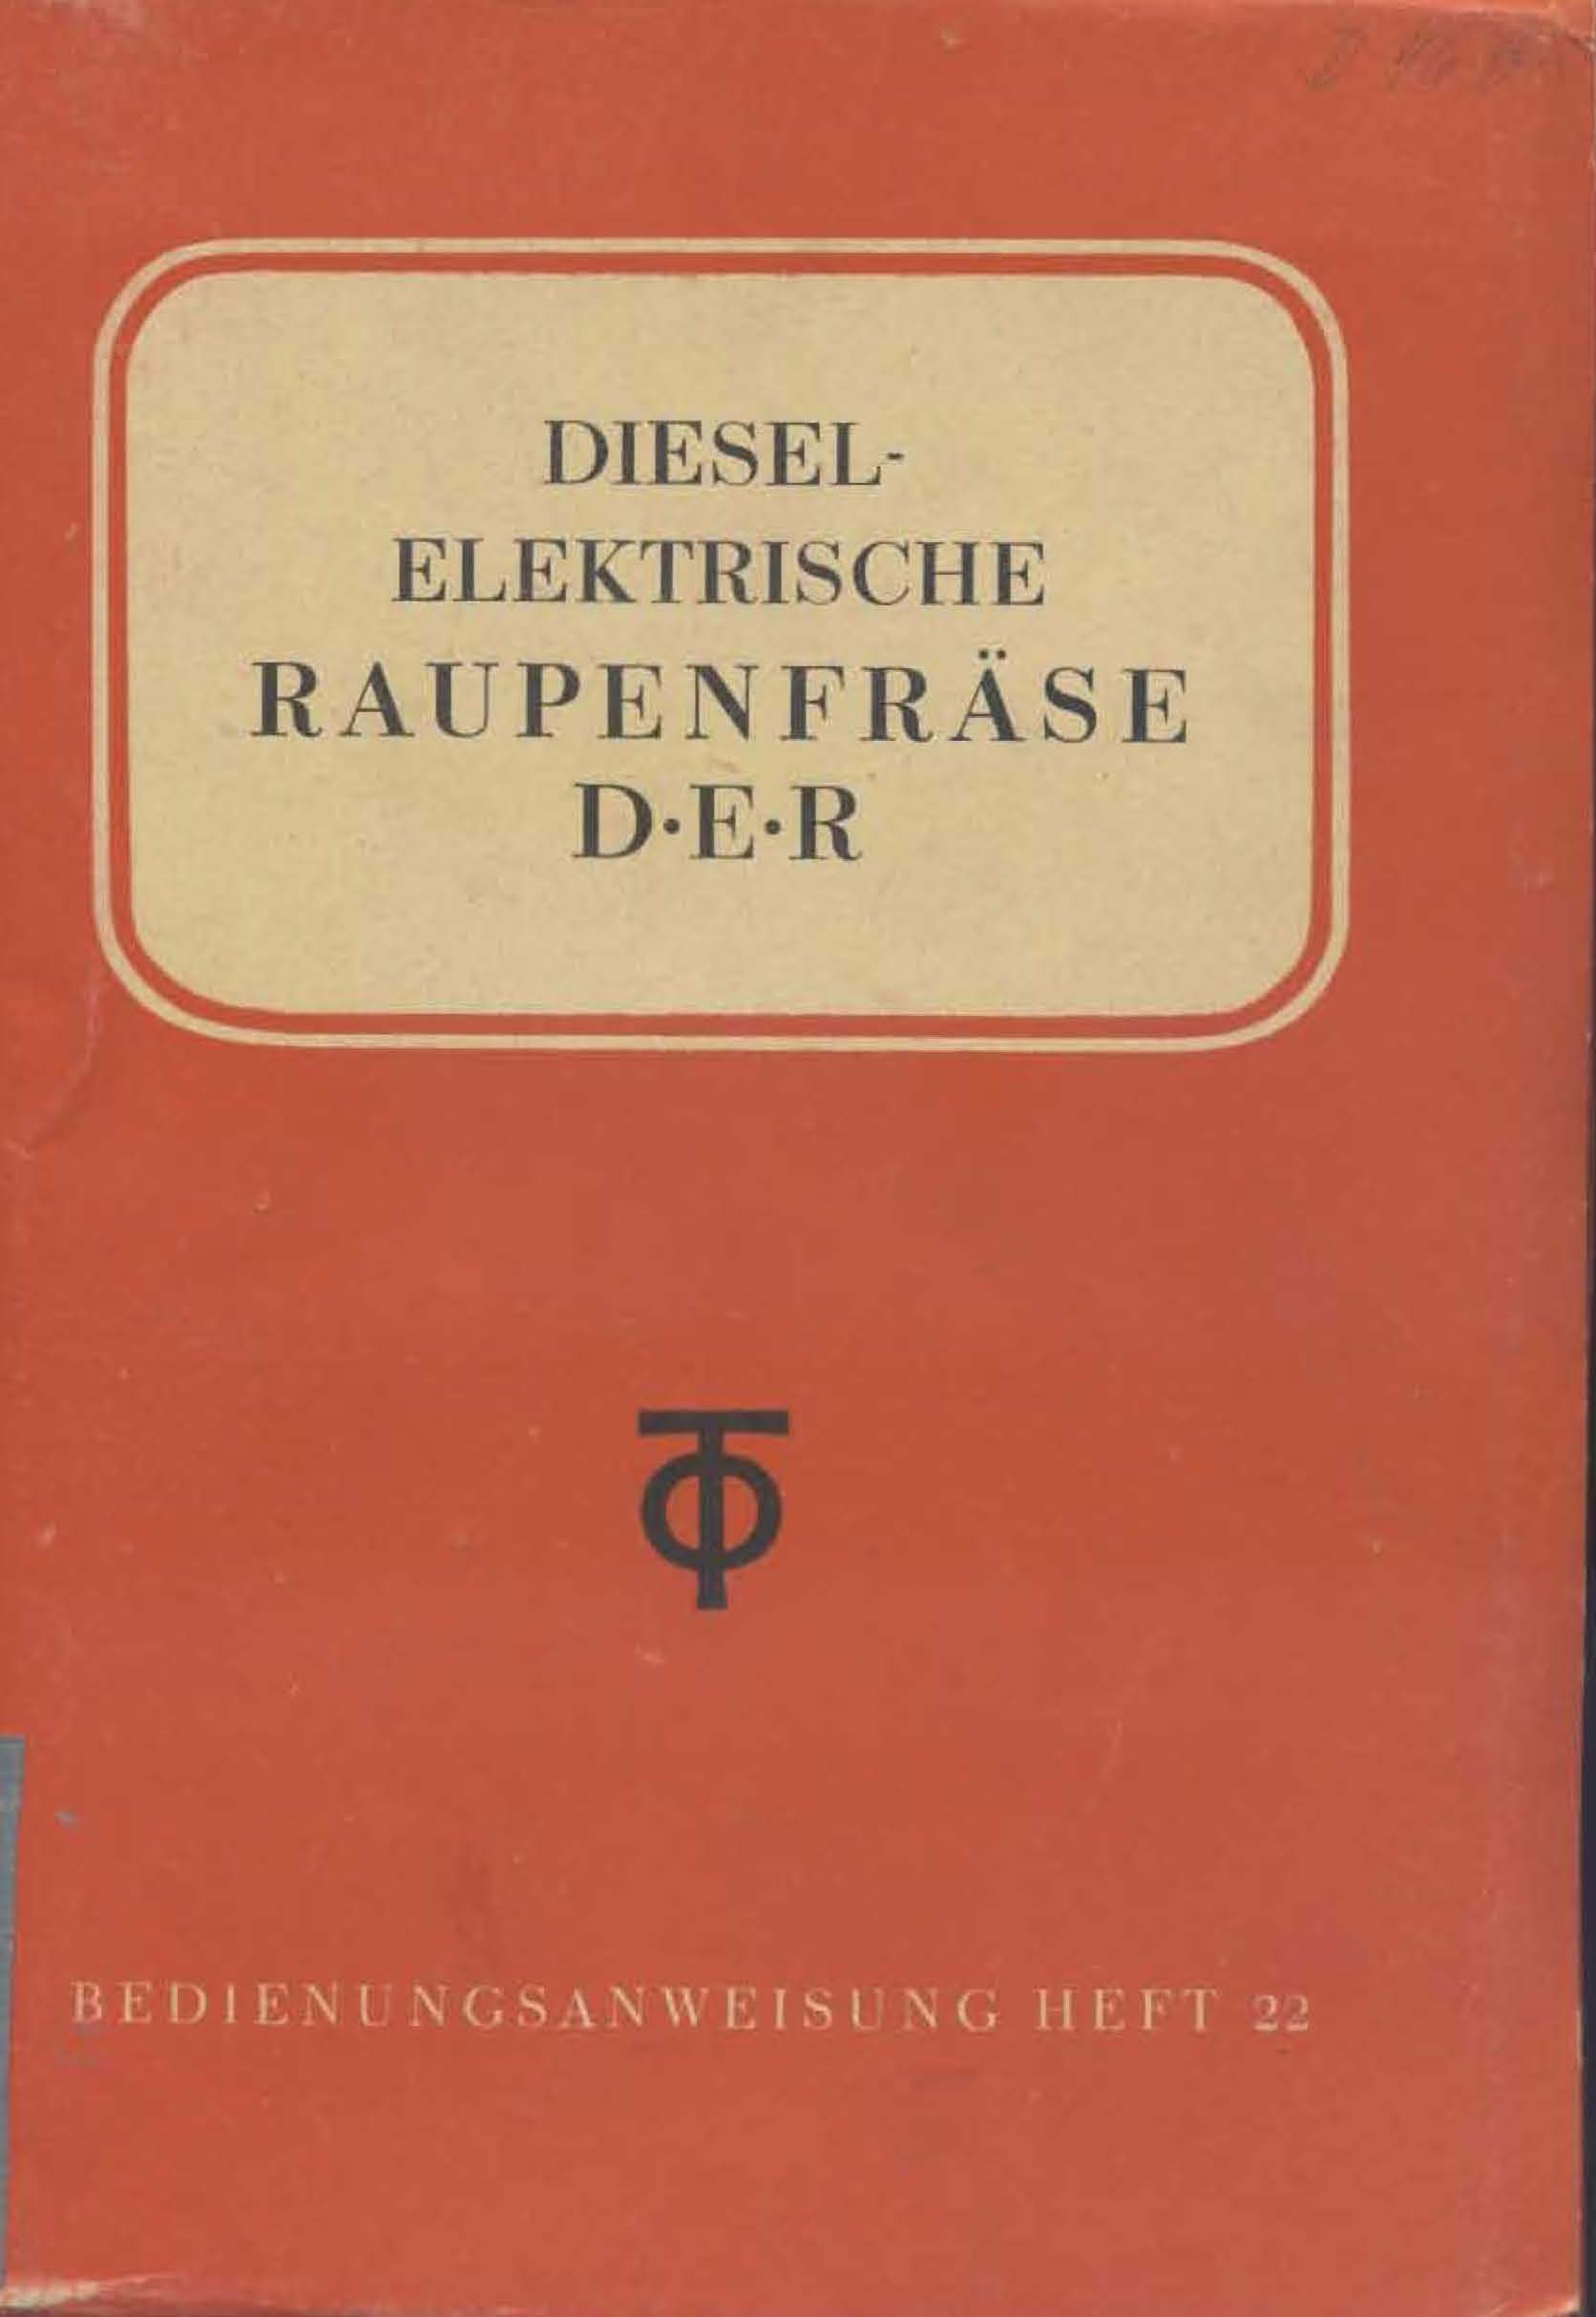 Diesel - Elektrische Raupenfräse DER